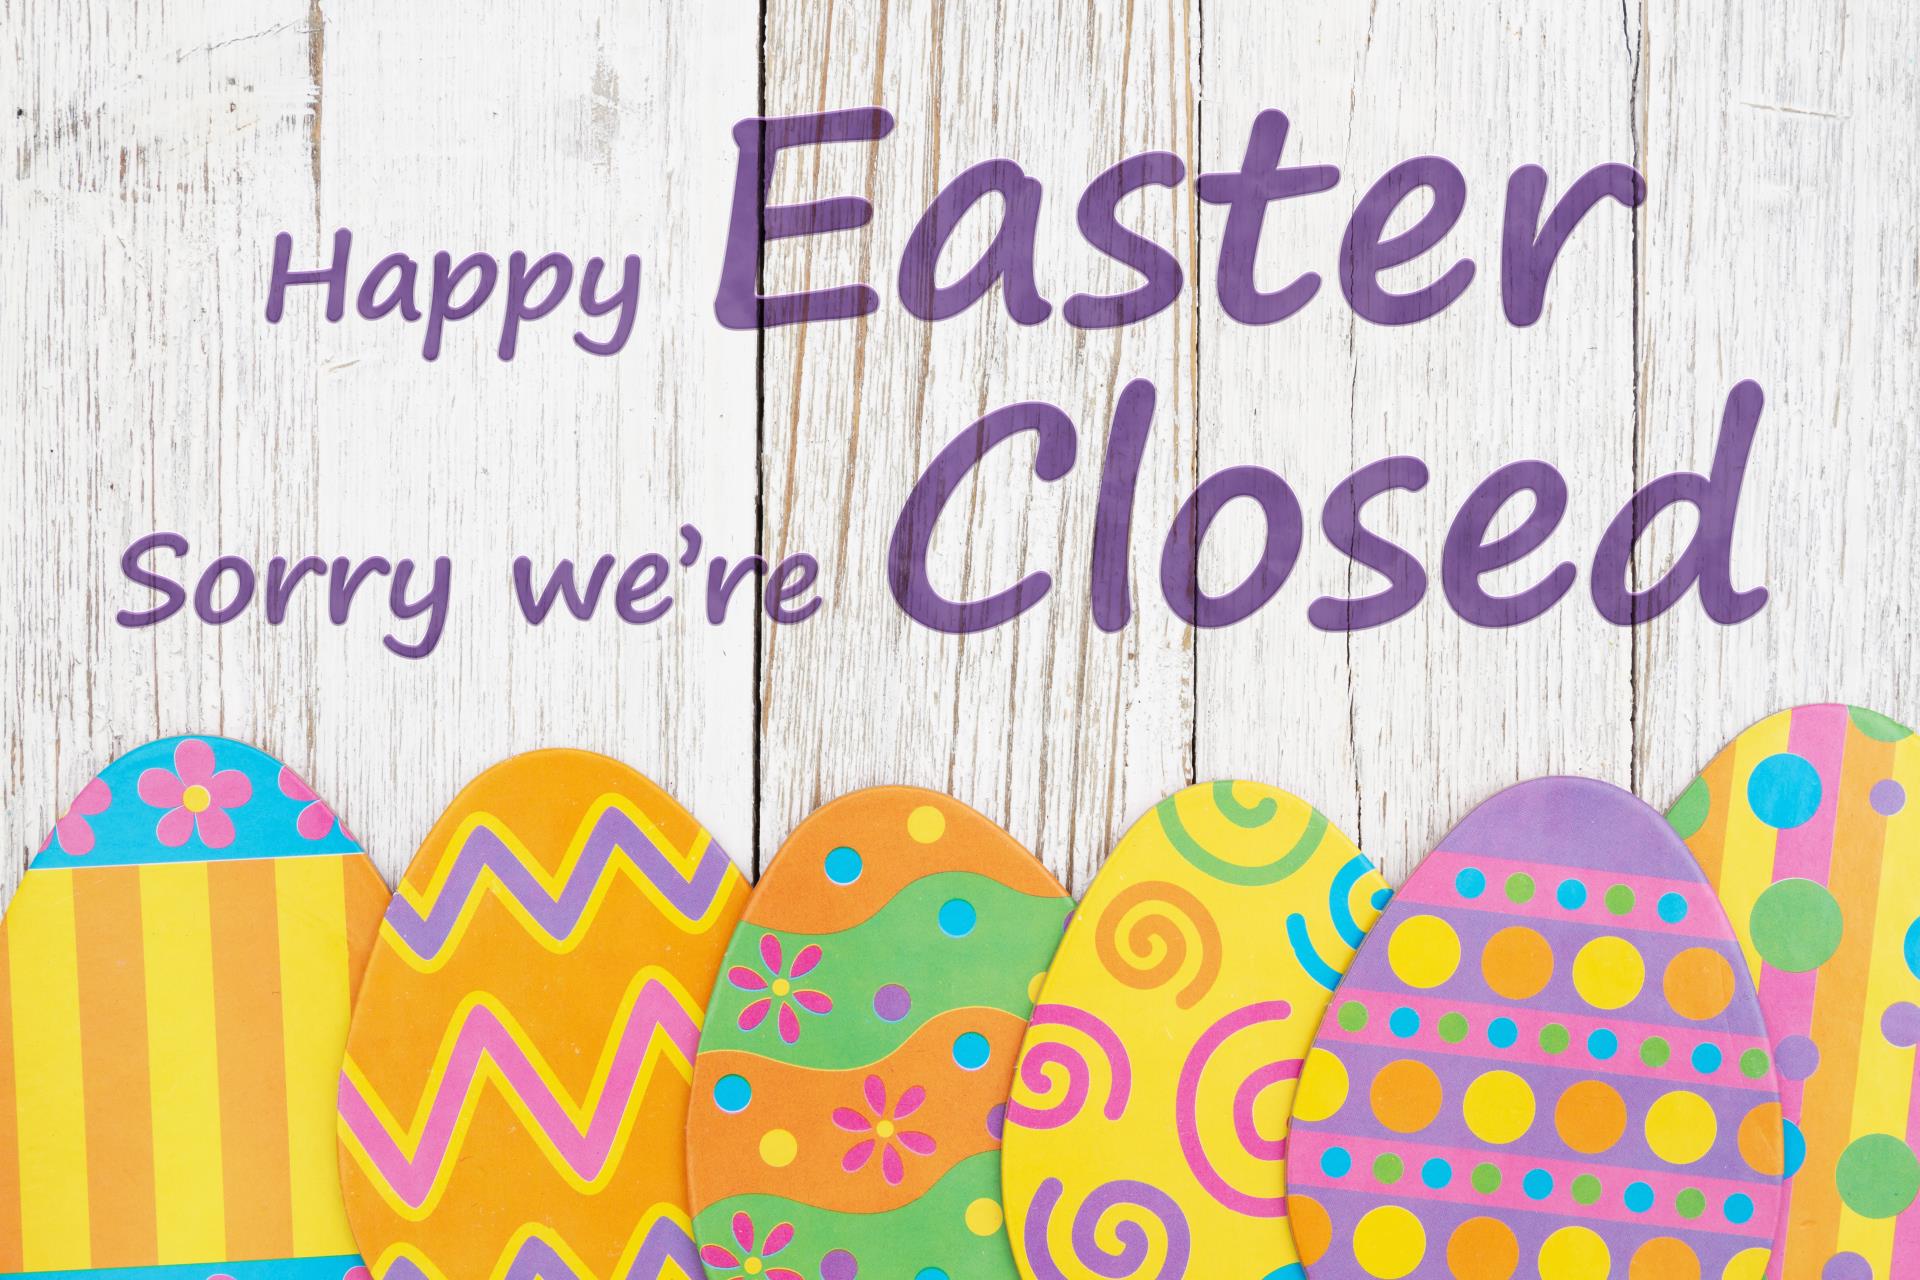 Easter Closure Dates